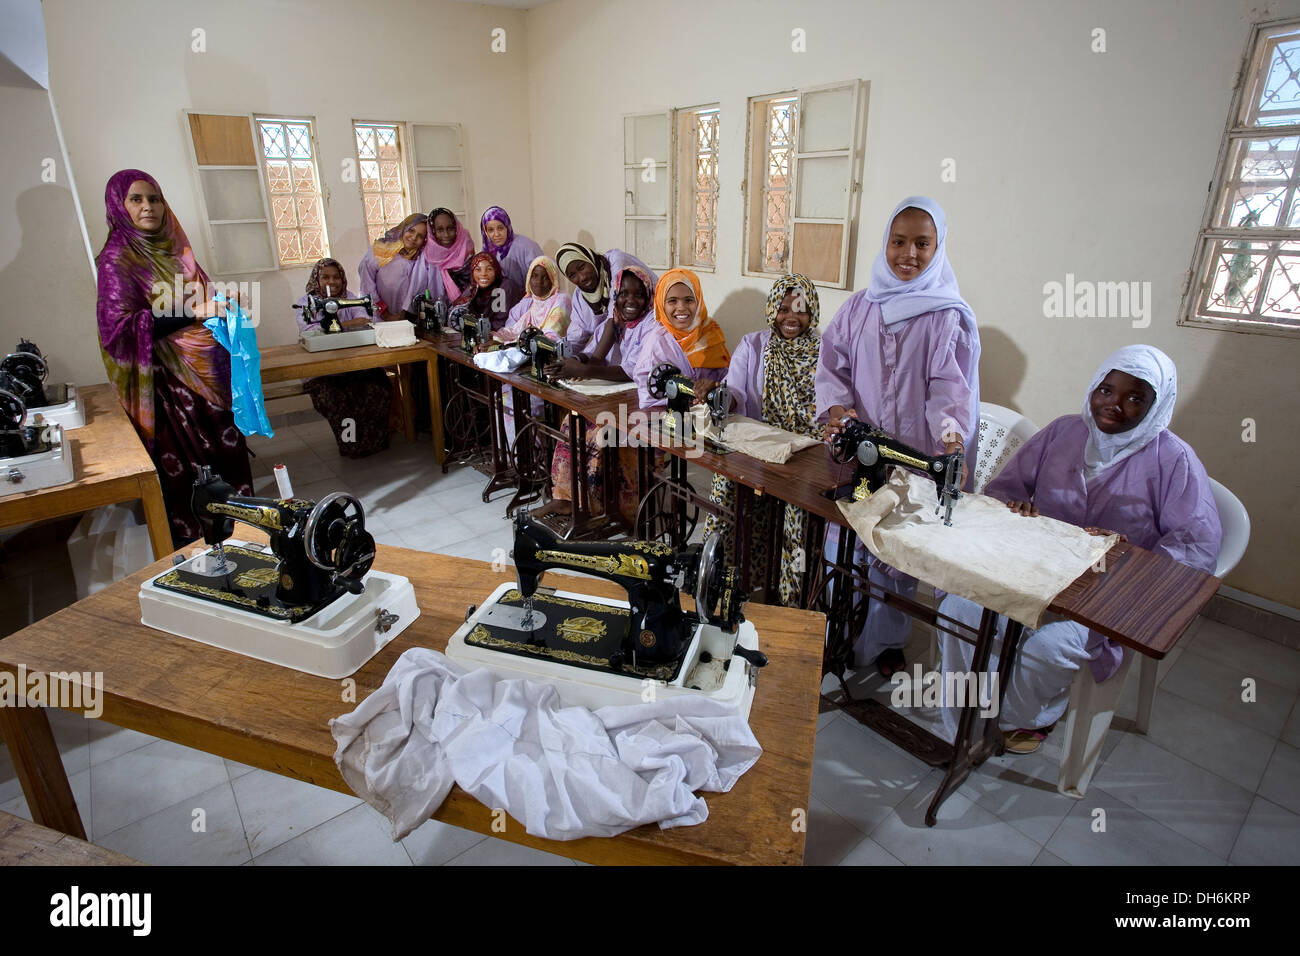 Les étudiantes de la classe de formation de couture, école pour les enfants défavorisés et abandonnés, Nouakchott, Mauritanie Banque D'Images